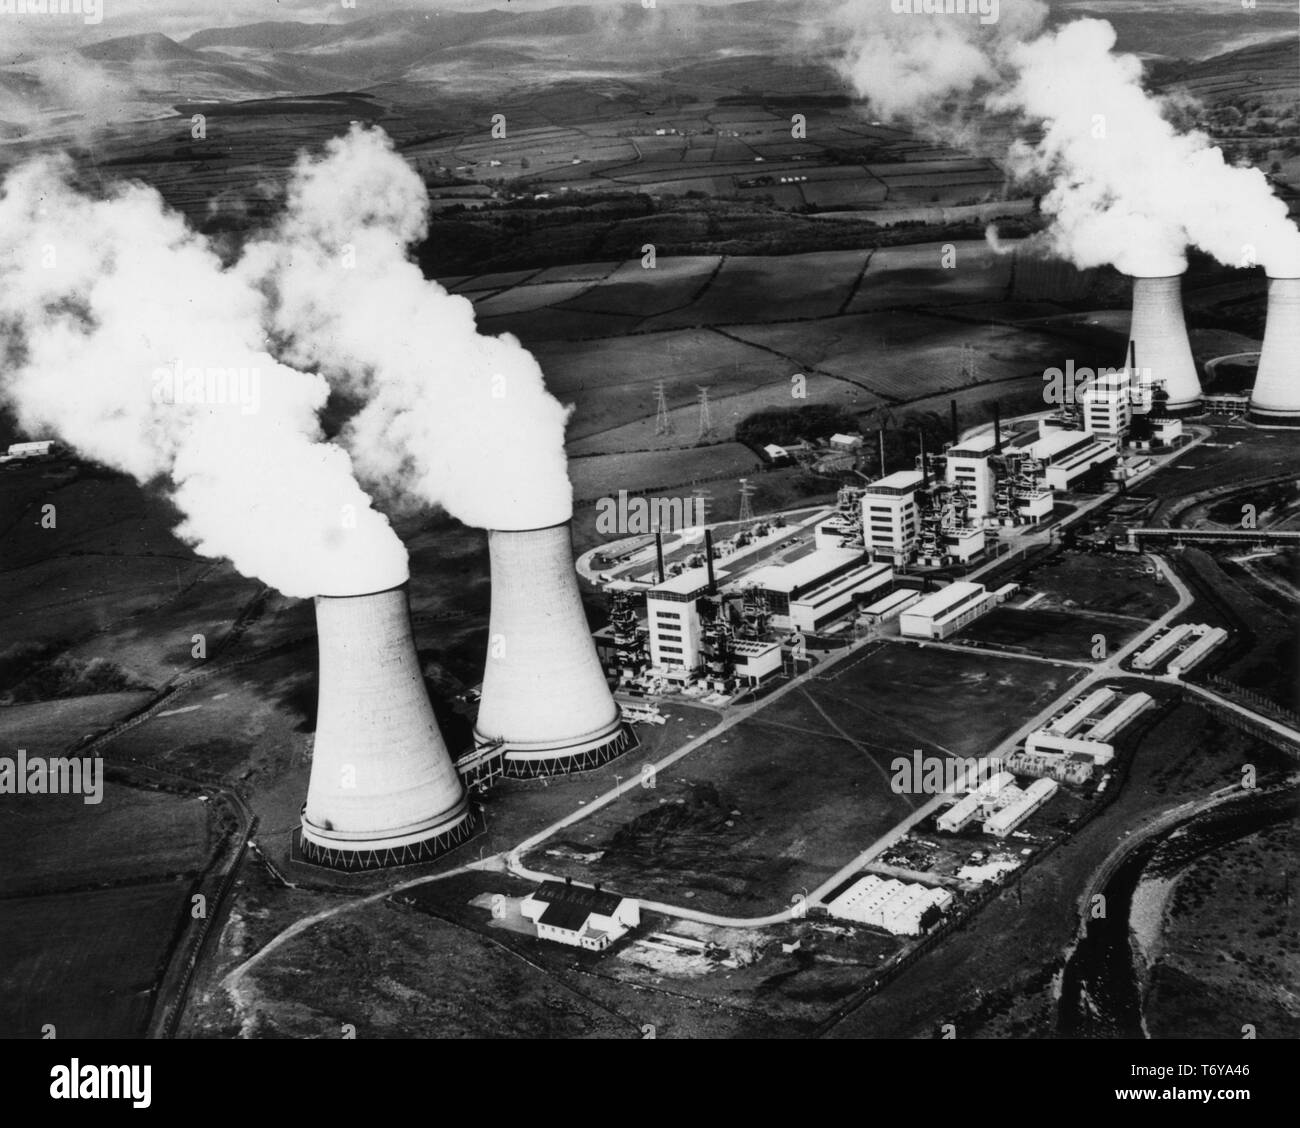 Vista aerea di torri di raffreddamento e le operazioni di edifici, Calder Hall centrale nucleare di Sellafield, Regno Unito, 1956. Immagine cortesia del Dipartimento Americano di Energia. () Foto Stock